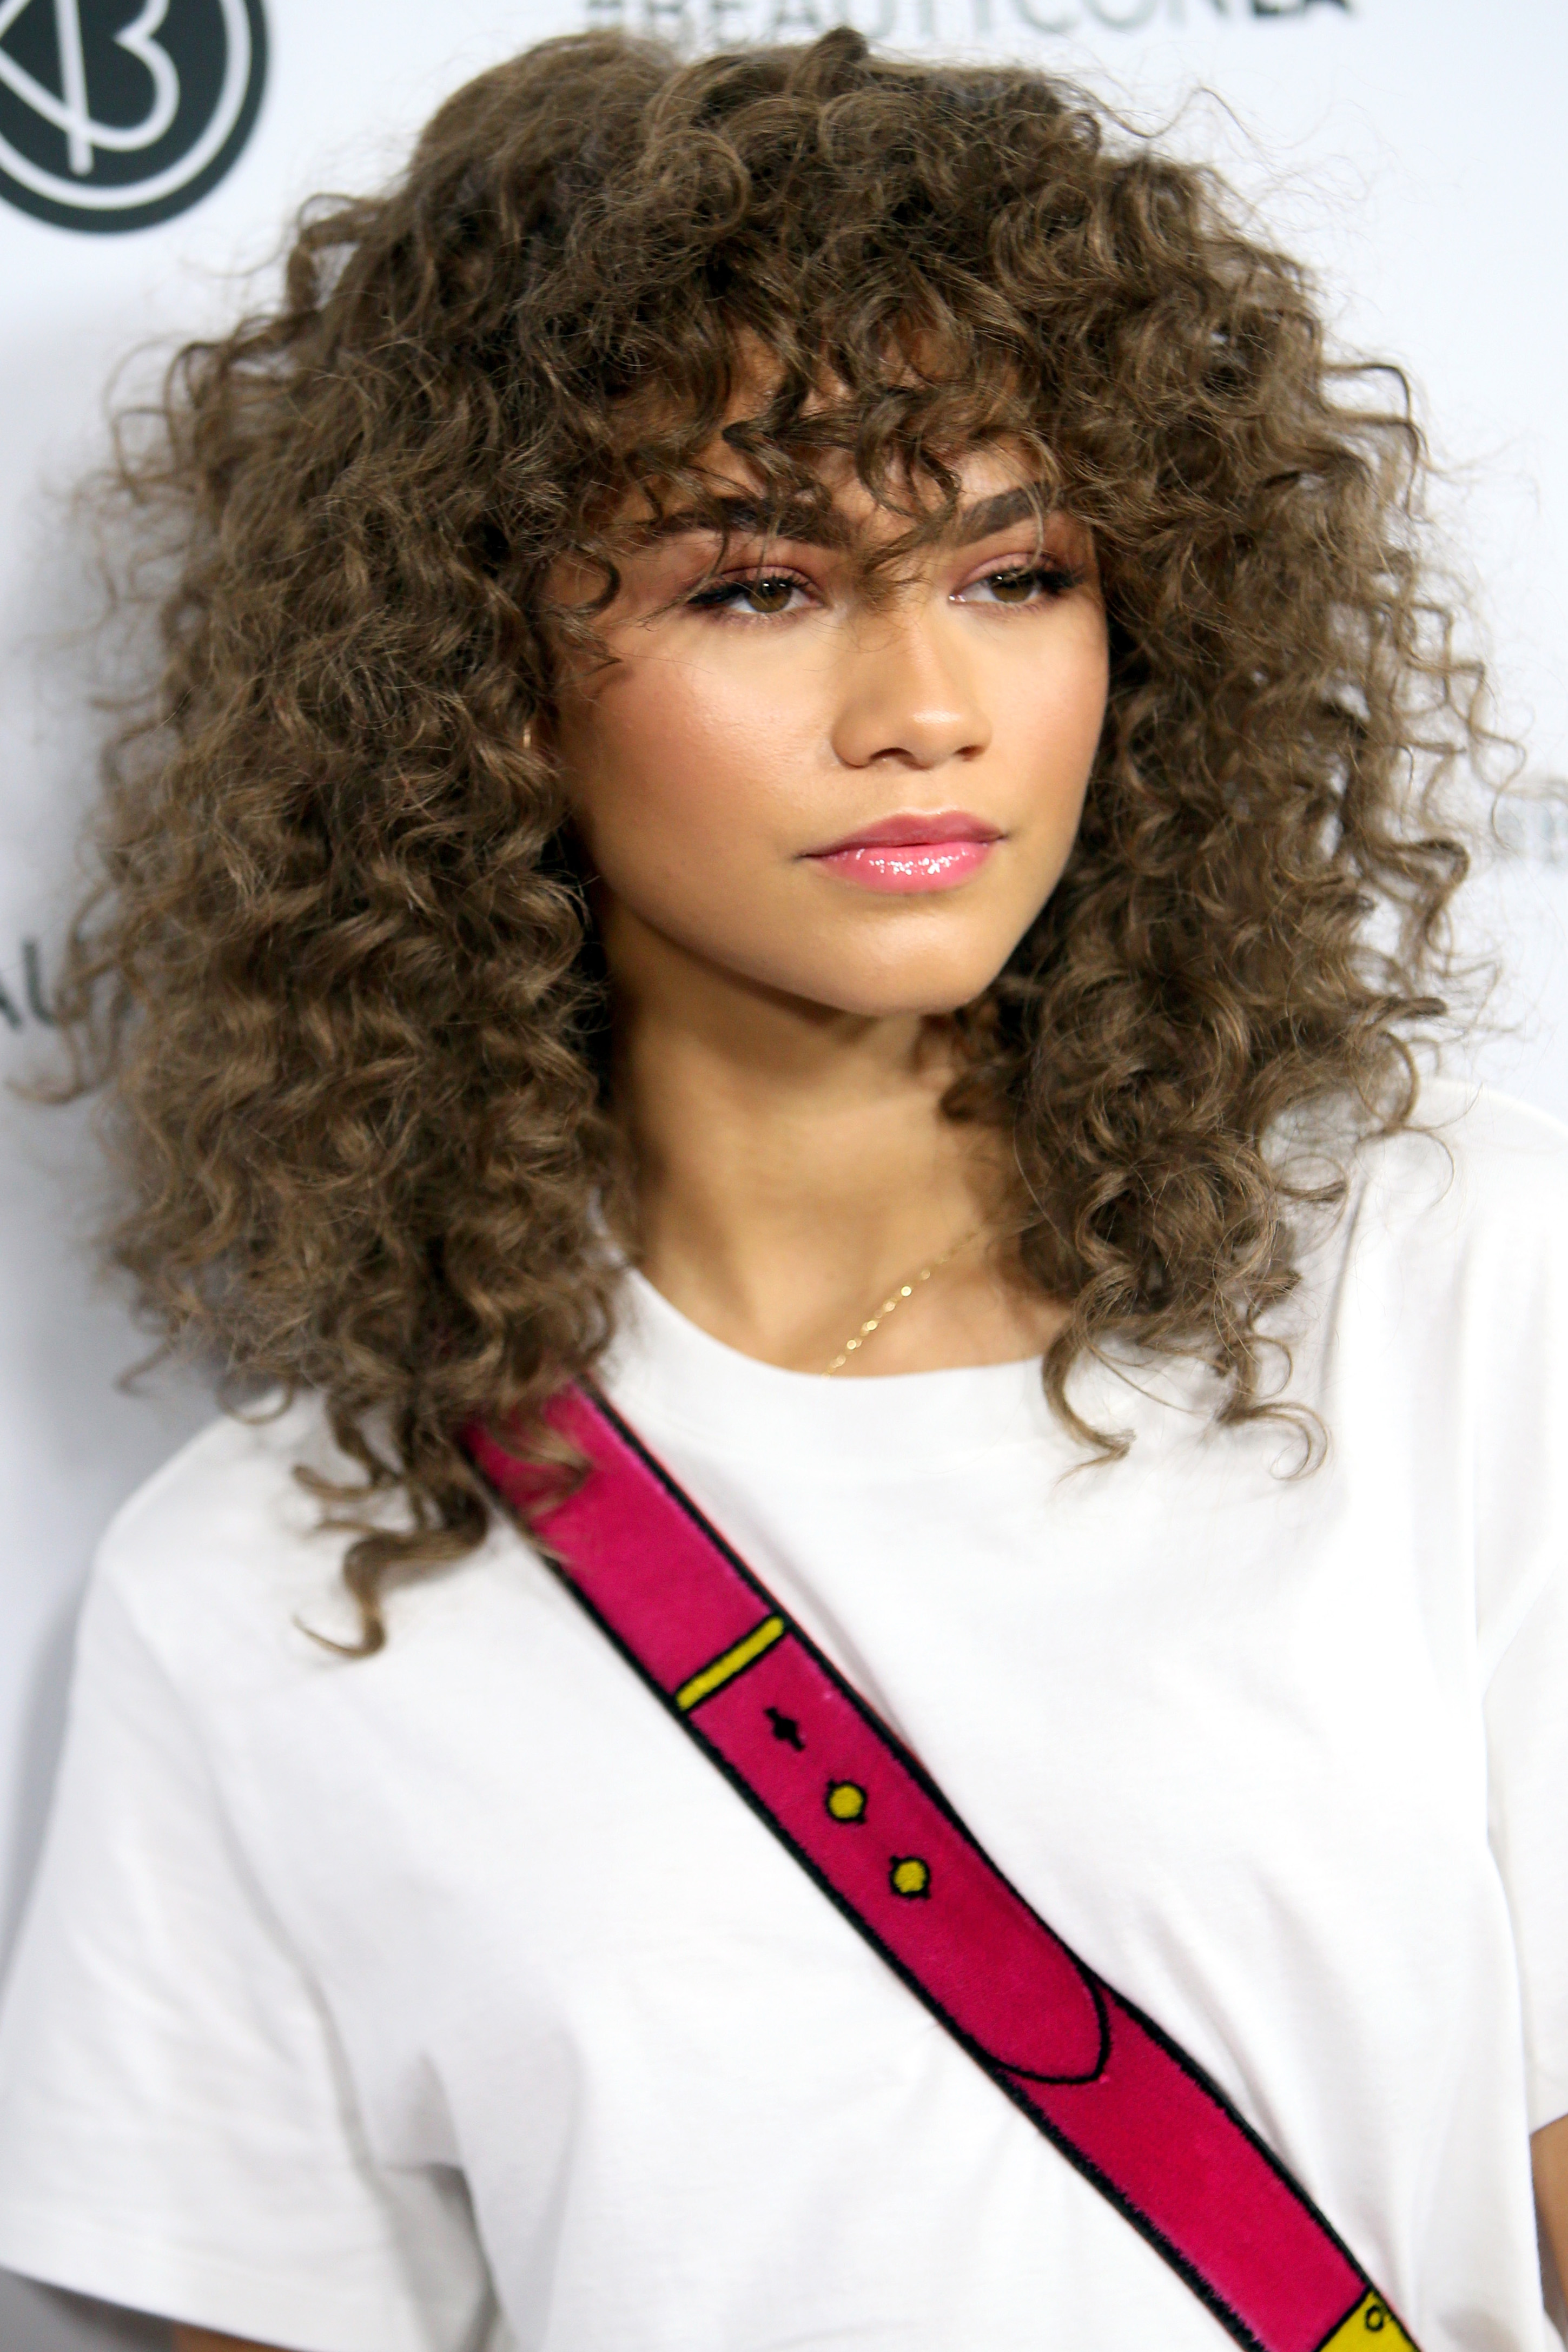 Прически с челкой − 15 вариантов женских причесок на длинные, короткие и средней длины волосы